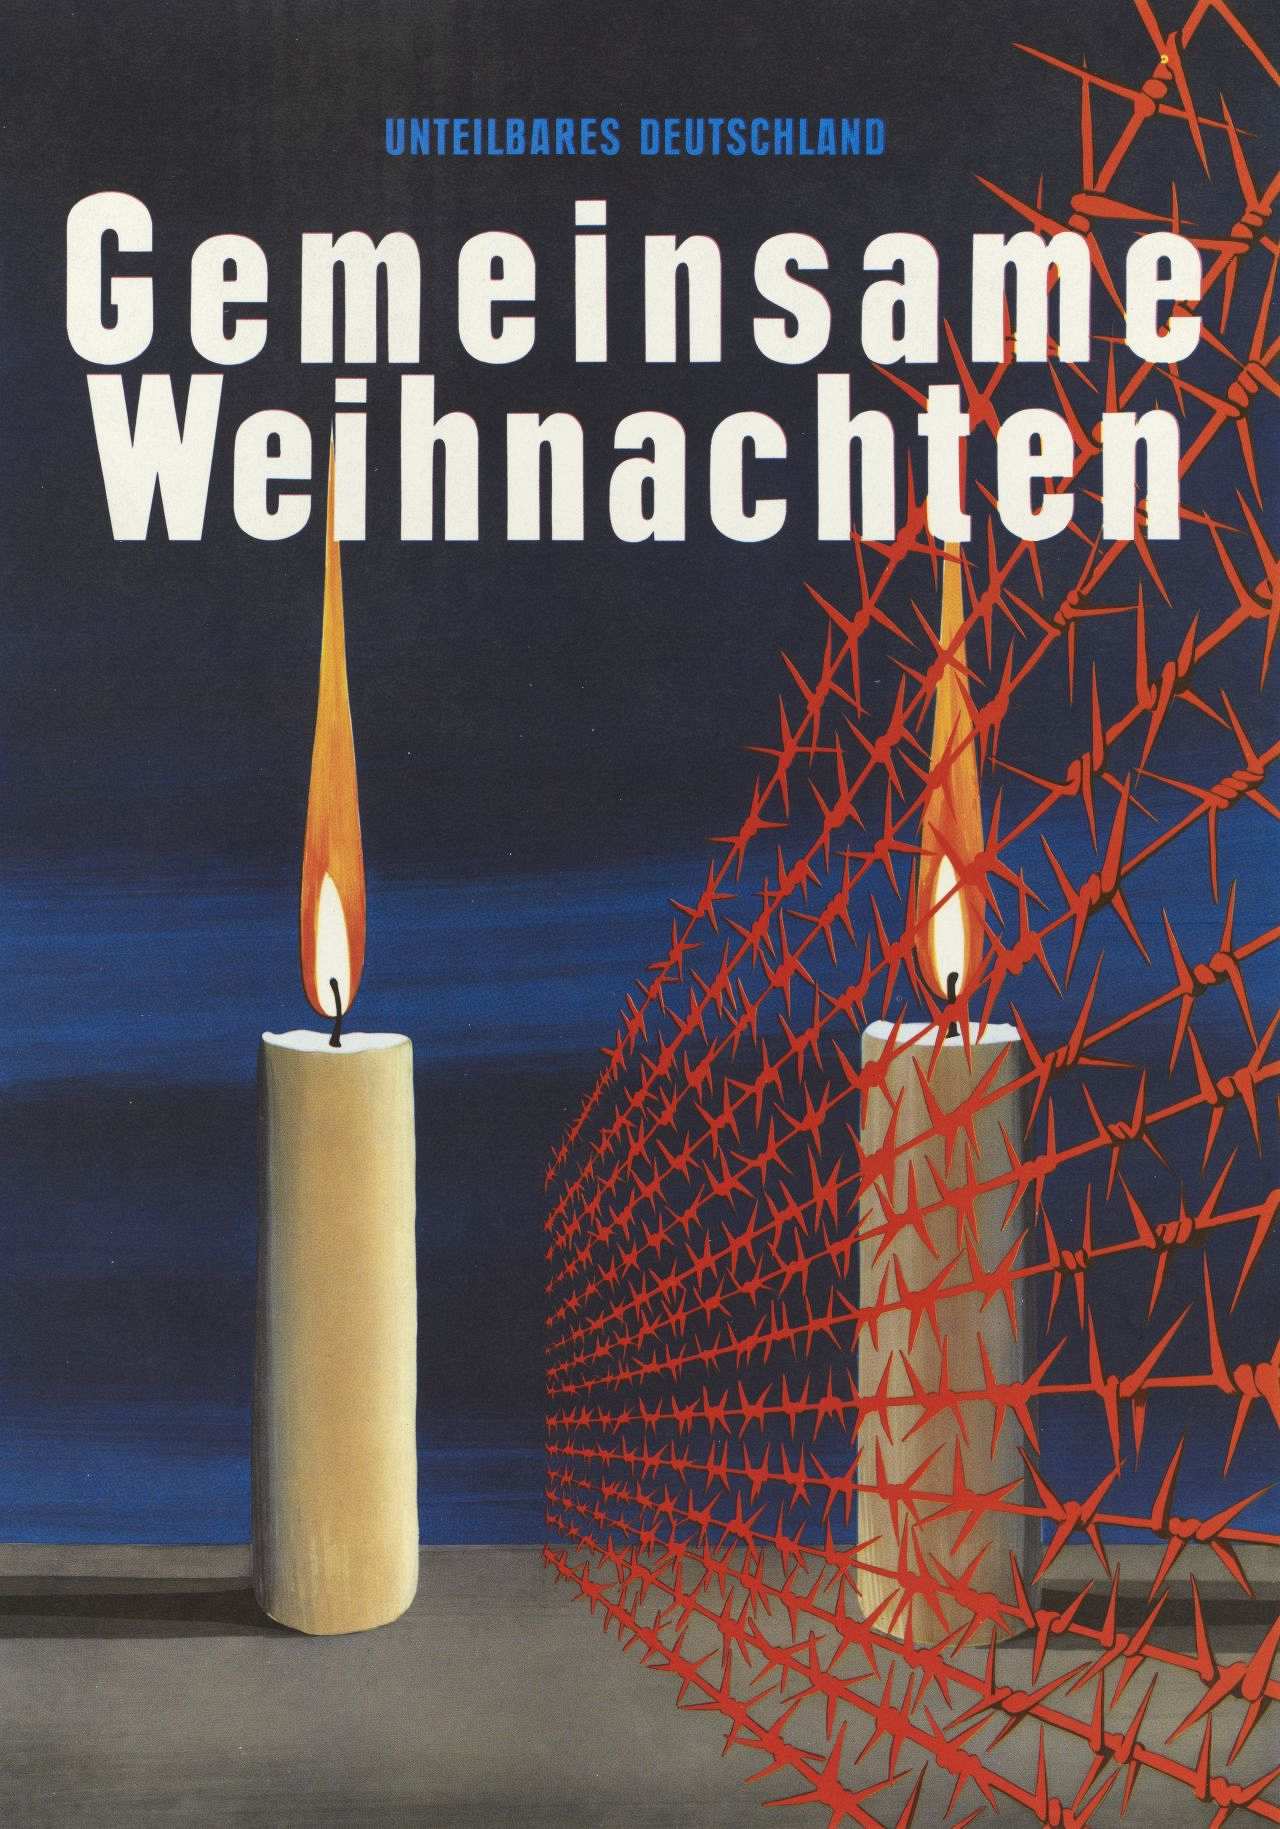 Farbige Zeichnung : vor tiefblauem Hintergrund zwei durch roten Stacheldraht getrennte Kerzen. Text: Unteilbares Deutschland.